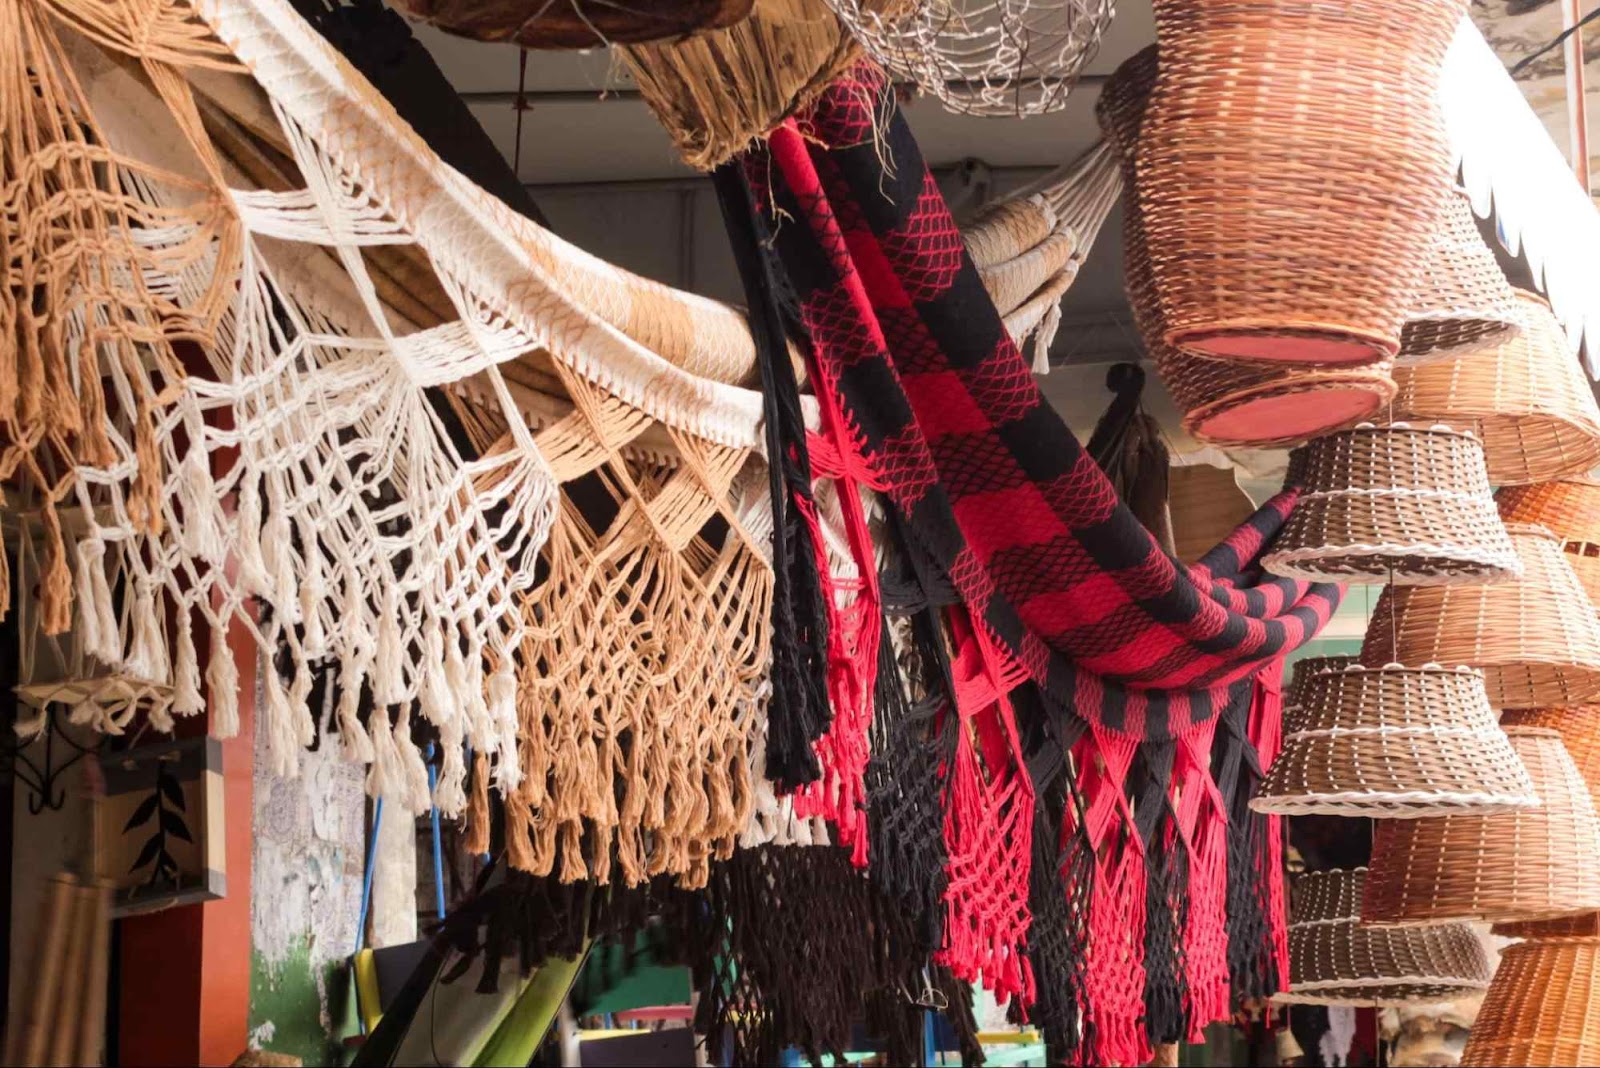 Redes de tecido e cestos de palha artesanais expostos para venda em uma barraquinha de feira.